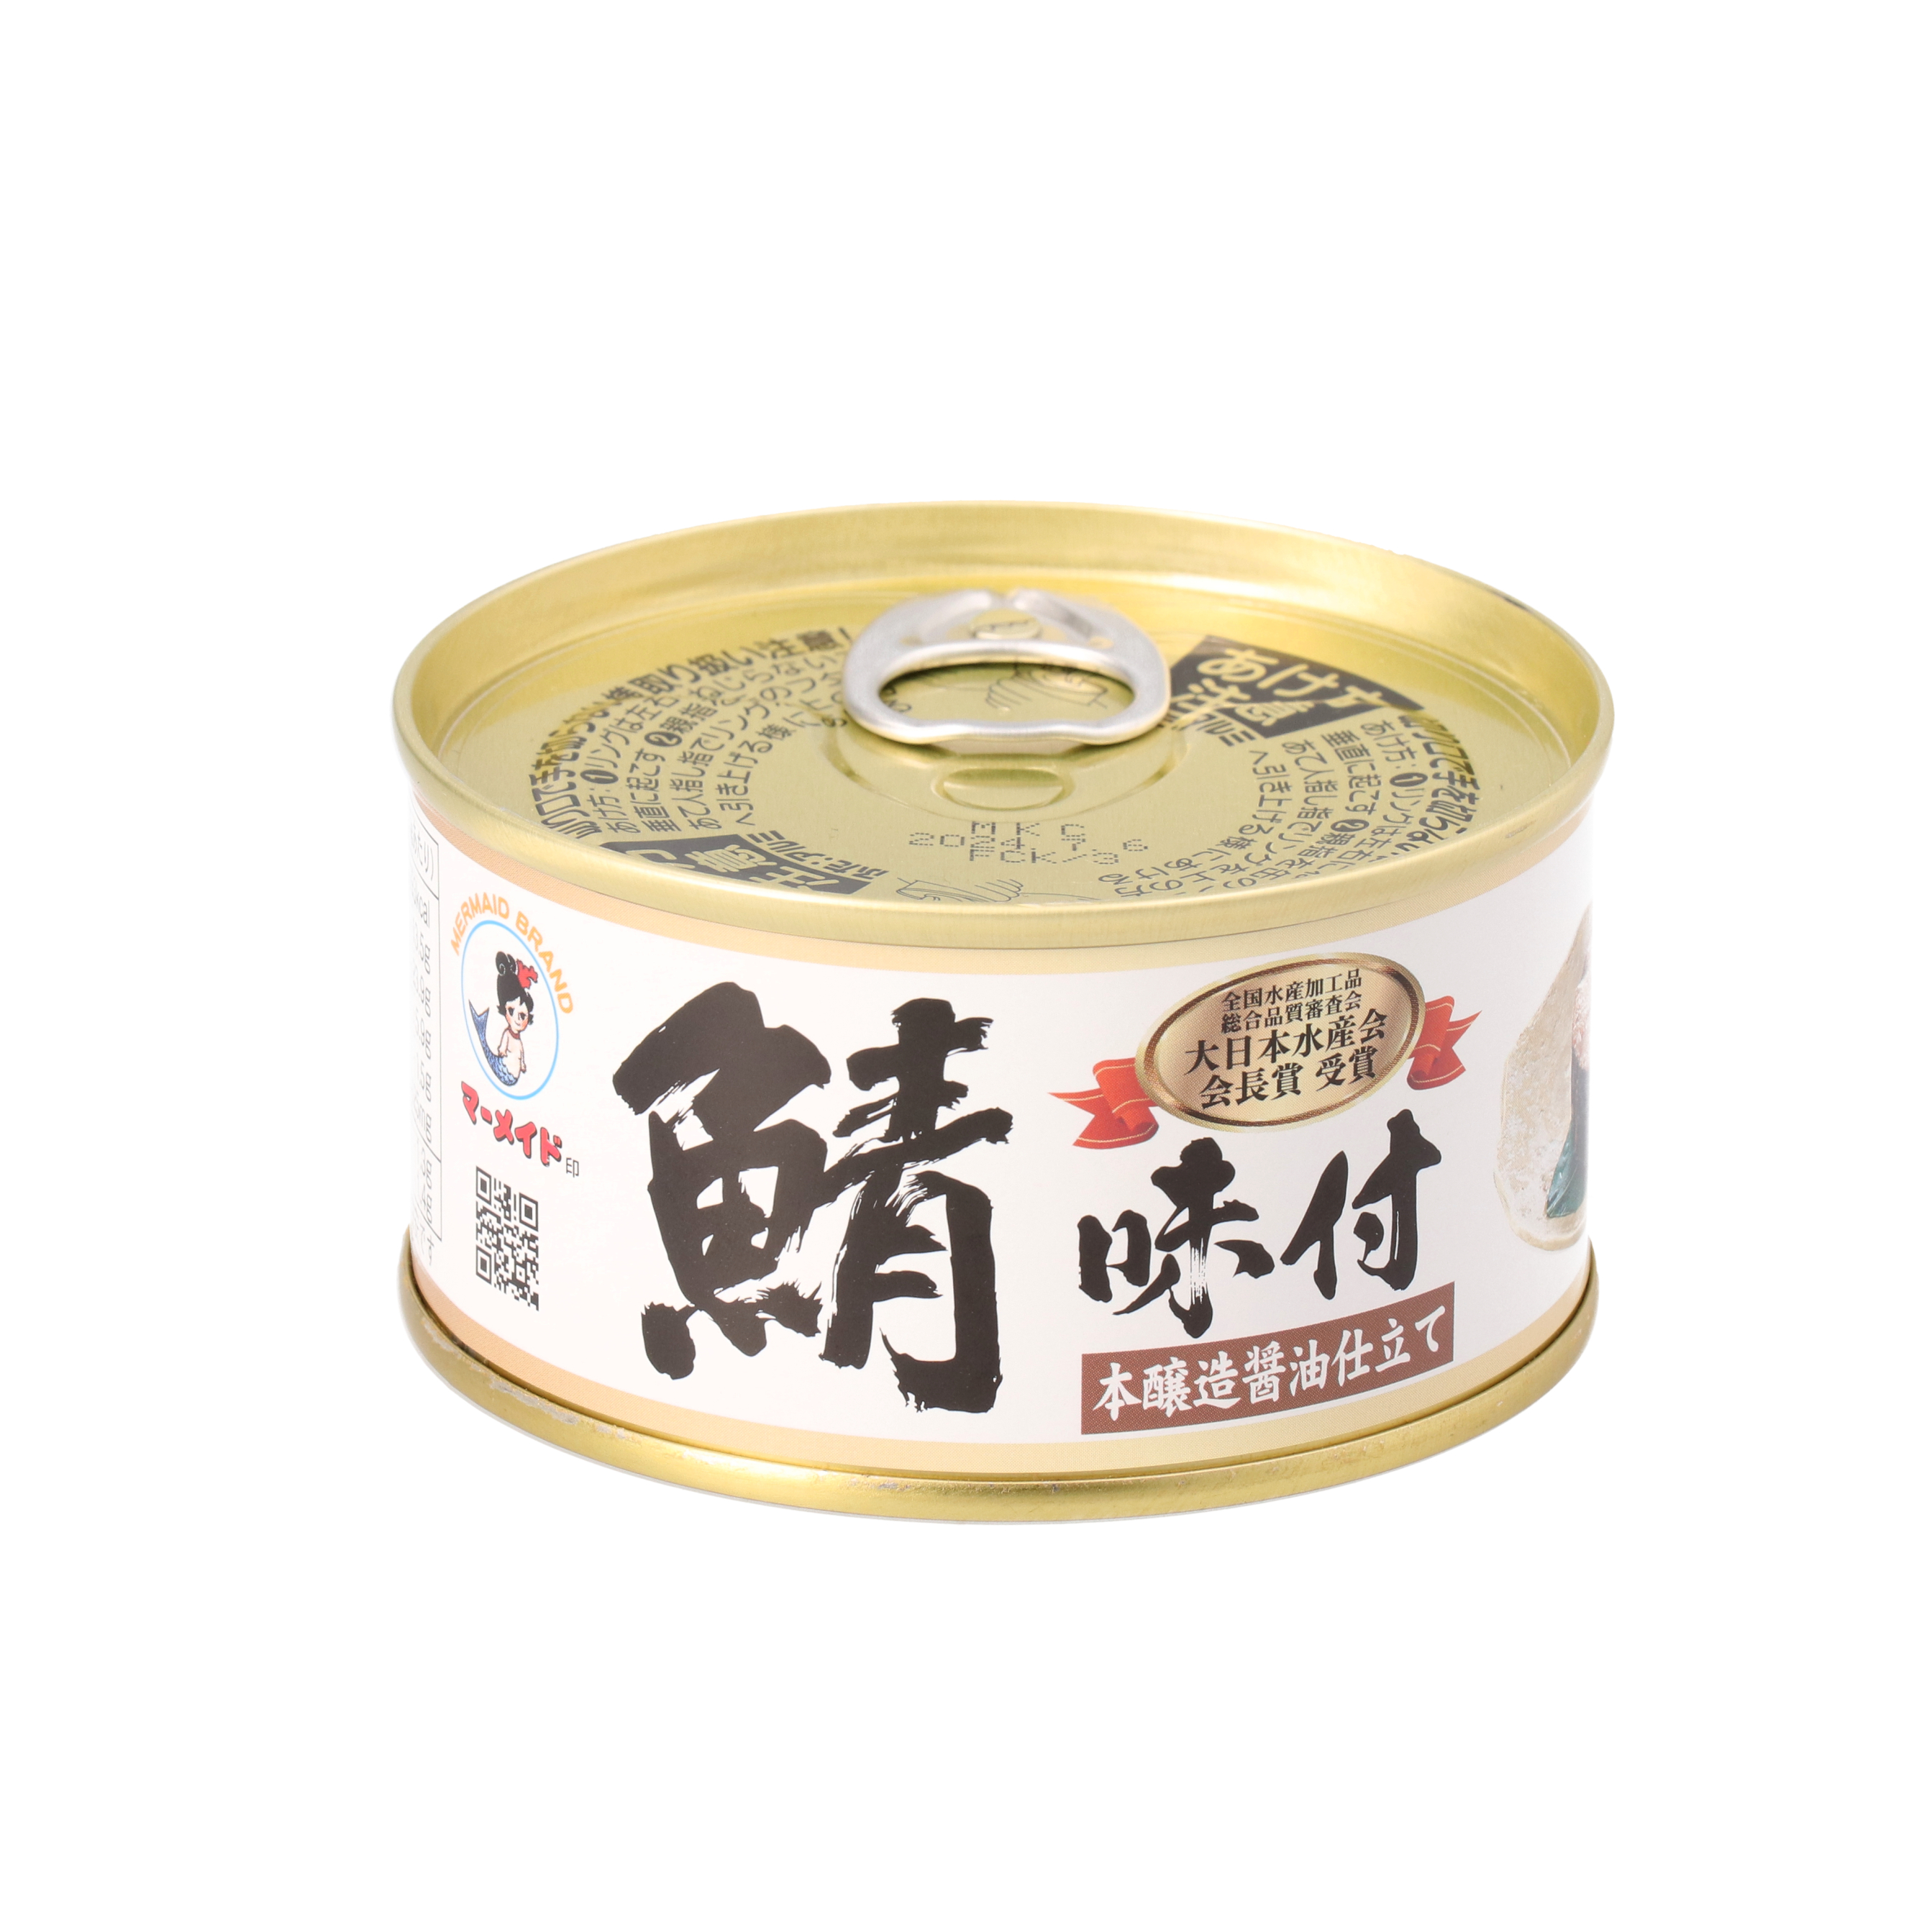 福井缶詰 マーメイド印 鯖 味付 さば 缶詰 まとめ買い 本醸造正油